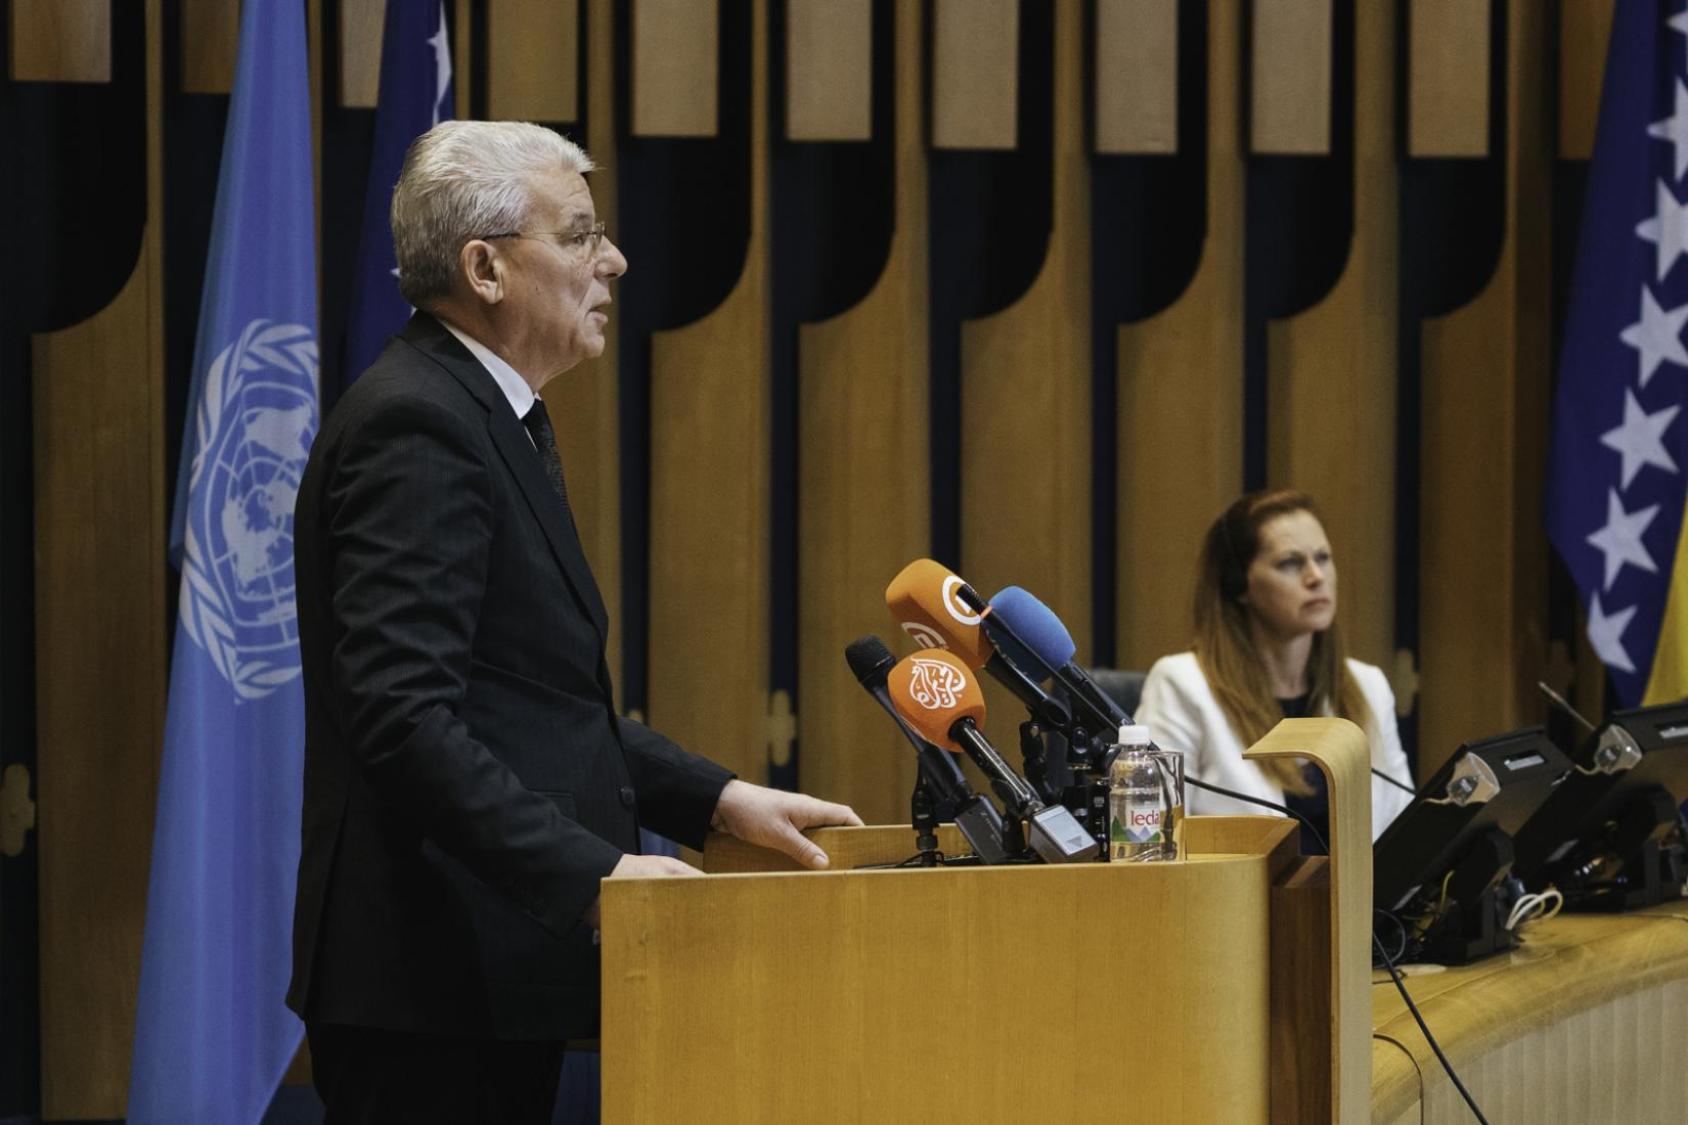 El máximo responsable de la Presidencia de Bosnia y Herzegovina, S.E. Šefik Džaferović, sube al estrado para pronunciar el discurso de apertura de la ceremonia del trigésimo aniversario.